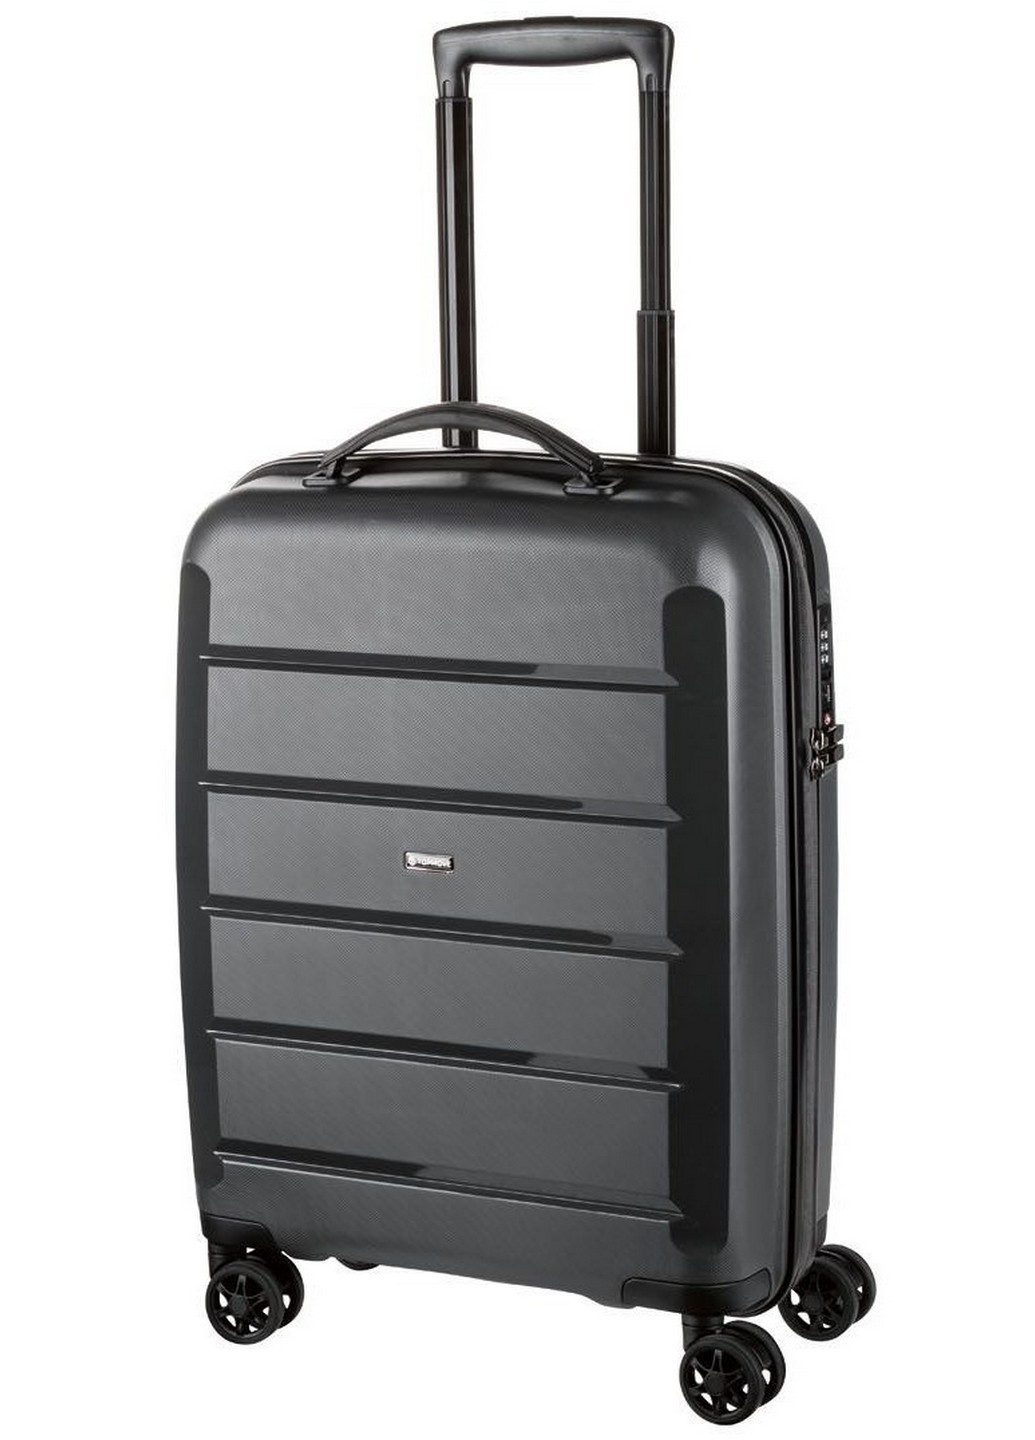 Малый пластиковый чемодан из полипропилена 55х40х20 см Top Move (259206181)